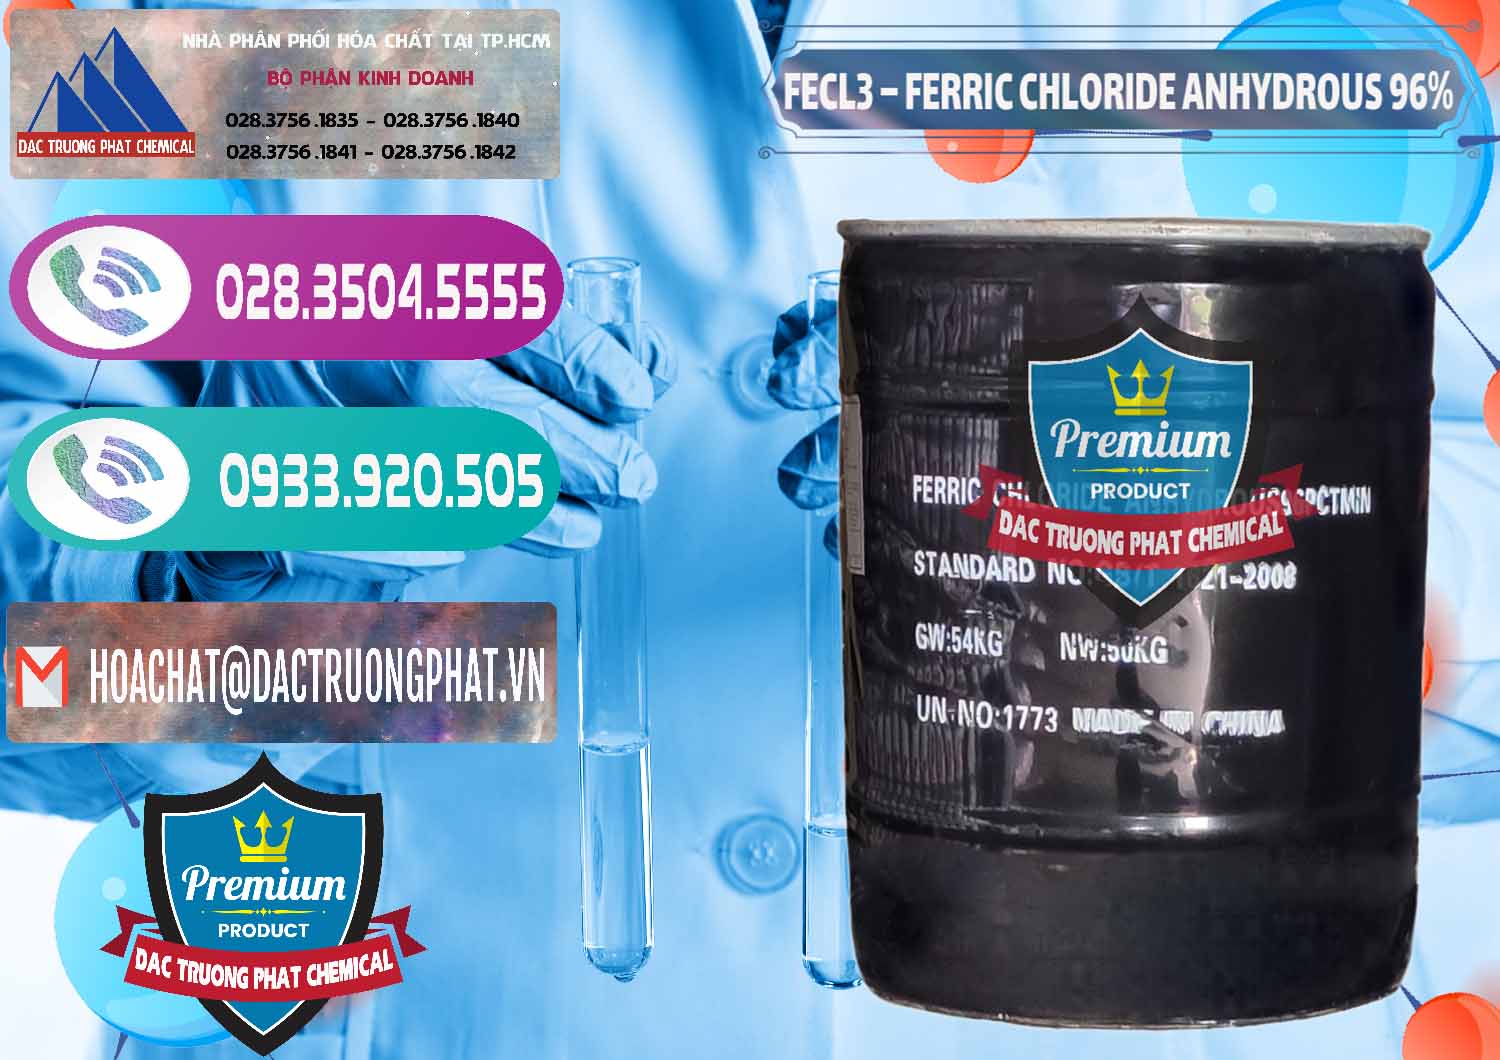 Chuyên cung cấp ( bán ) FECL3 – Ferric Chloride Anhydrous 96% Trung Quốc China - 0065 - Cty kinh doanh - cung cấp hóa chất tại TP.HCM - hoachatxulynuoc.com